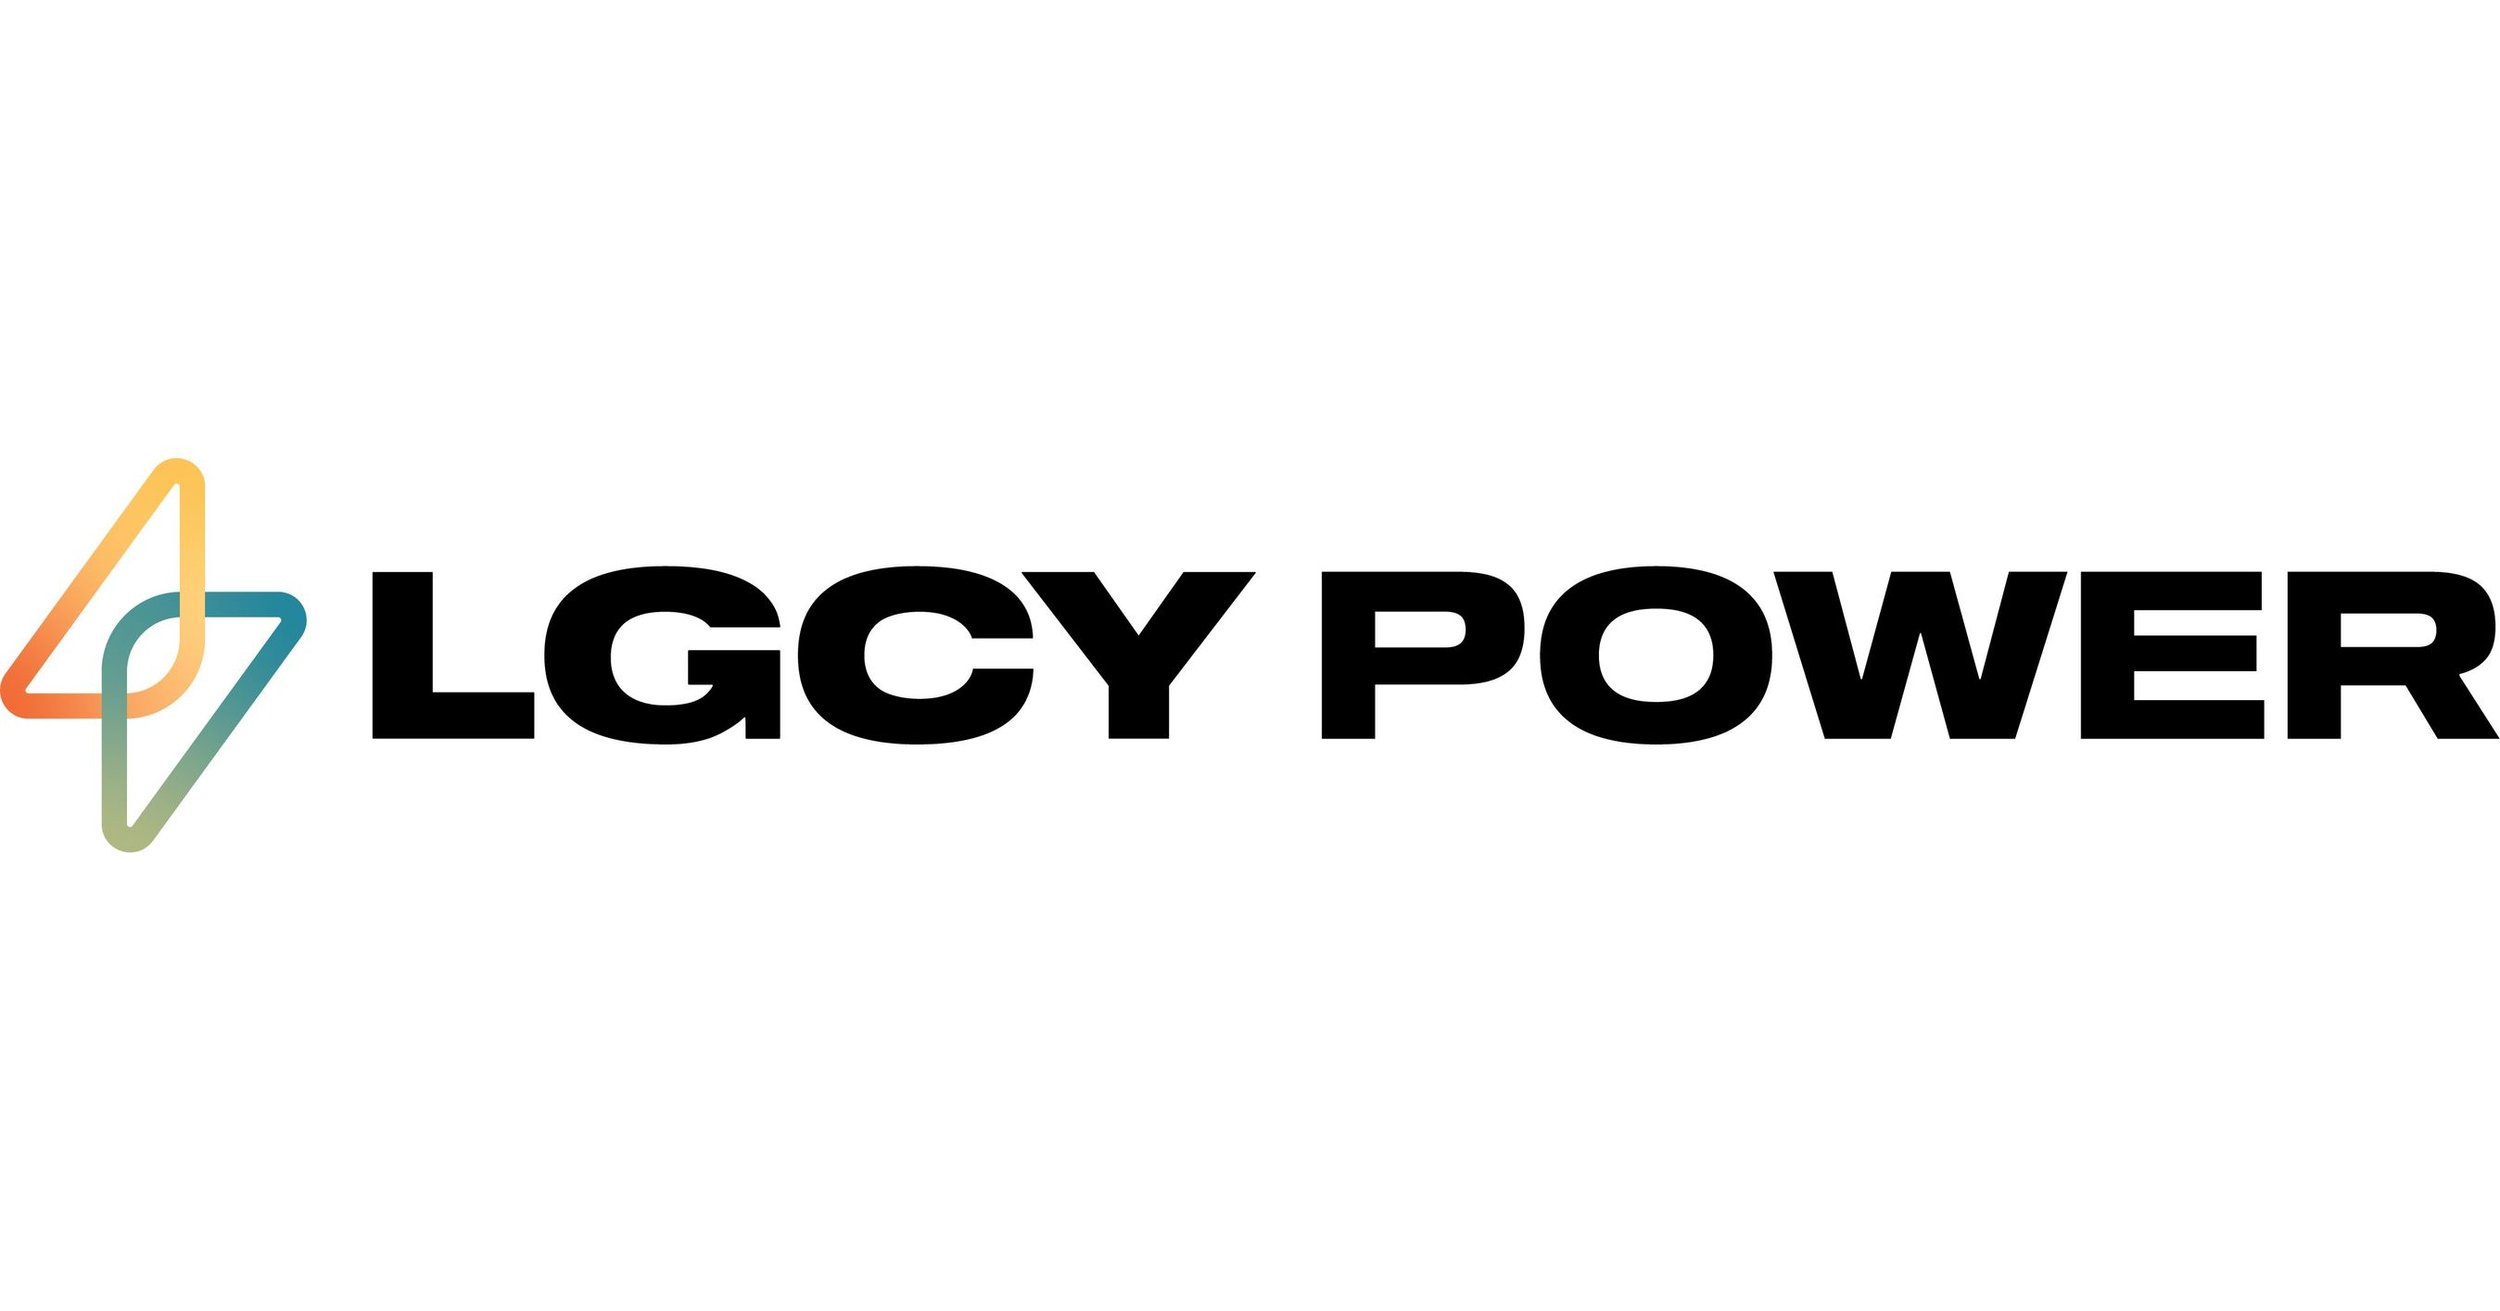 LGCY Power 